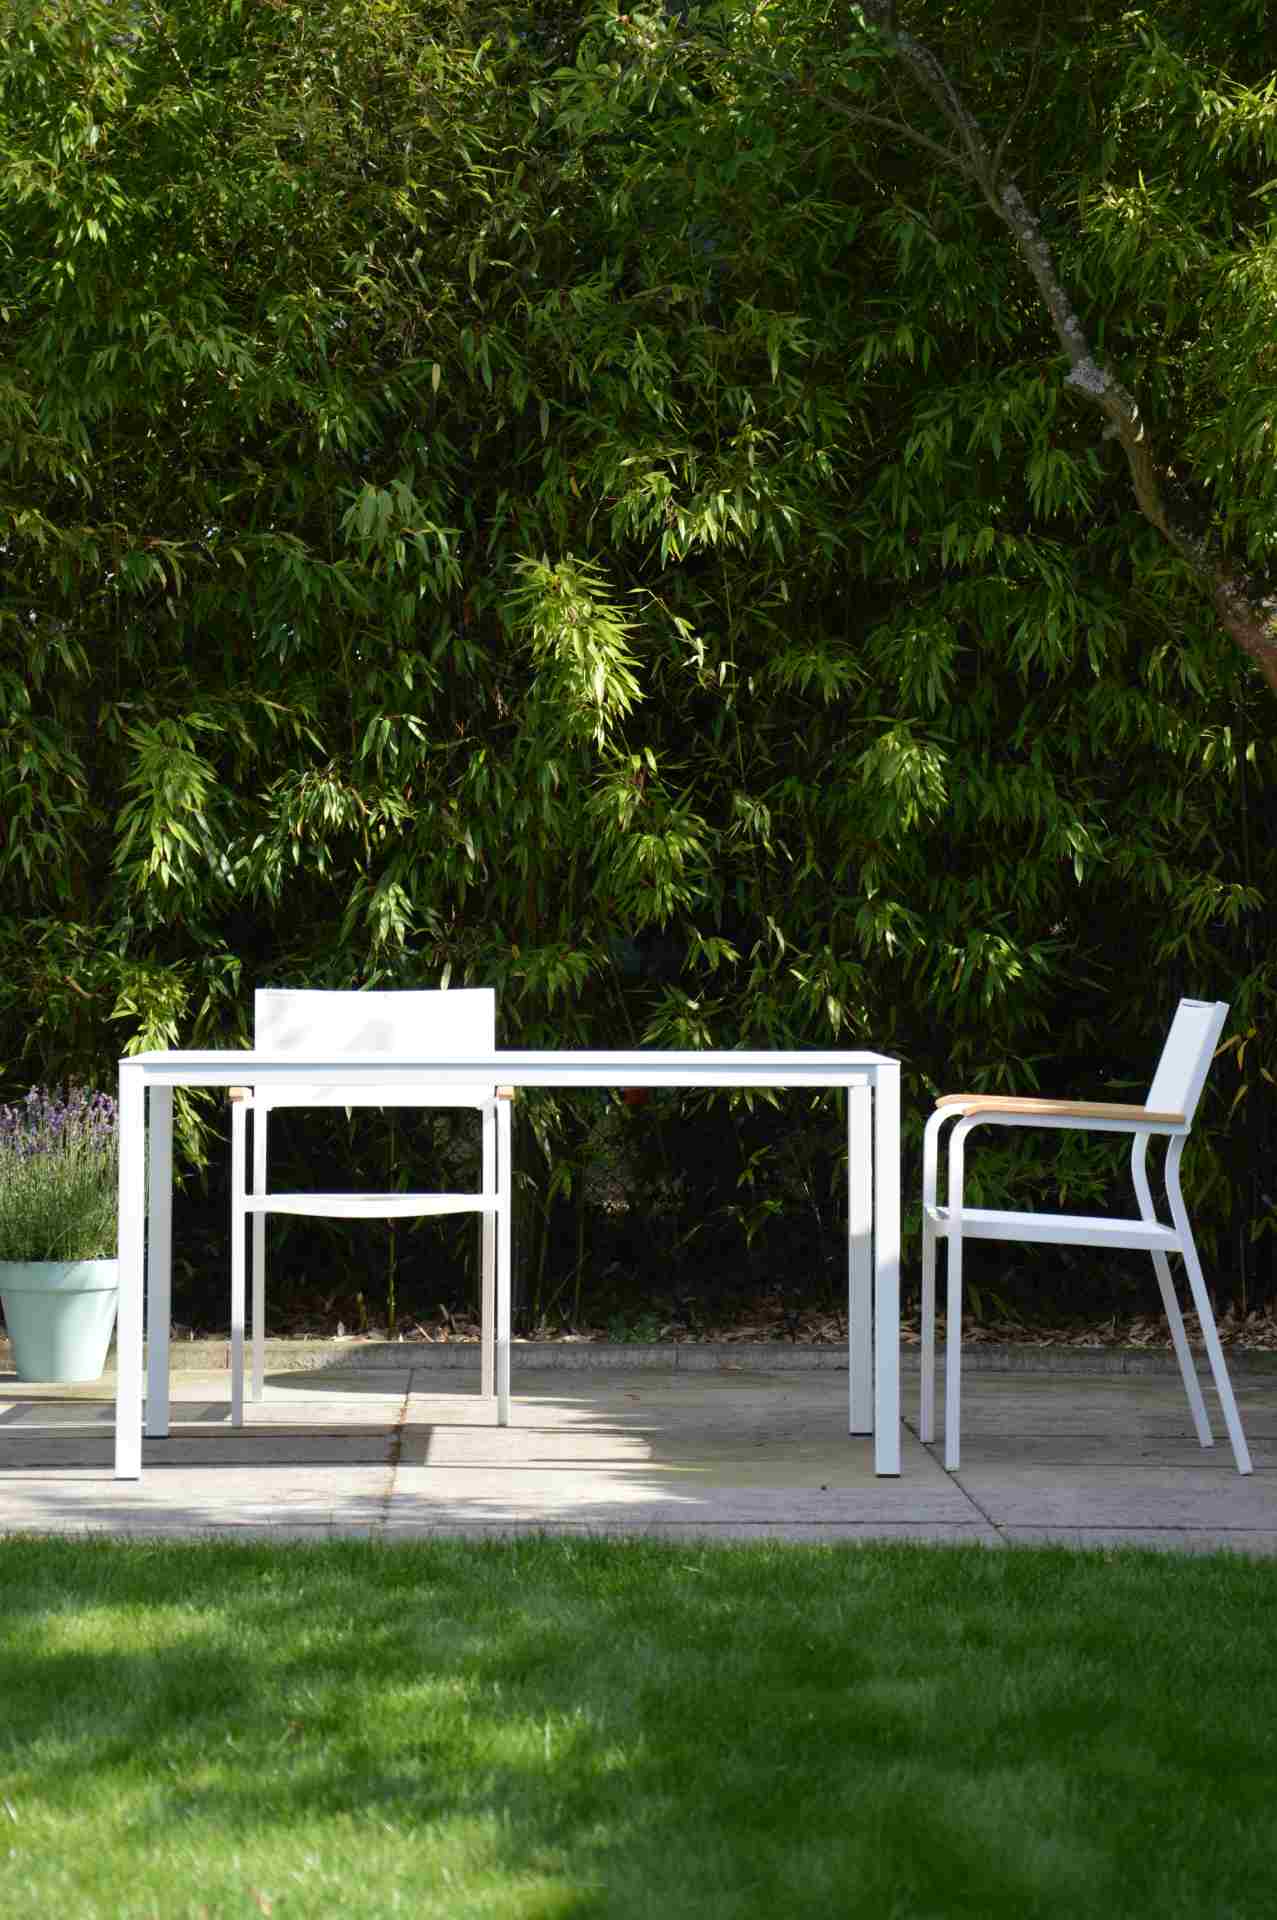 Der Stapelsessel Lux besitzt ein modernes Design. Hergestellt wurde der Sessel aus Aluminium von der Marke Jan Kurtz. Der Sessel besitzt die Farbe Weiß.